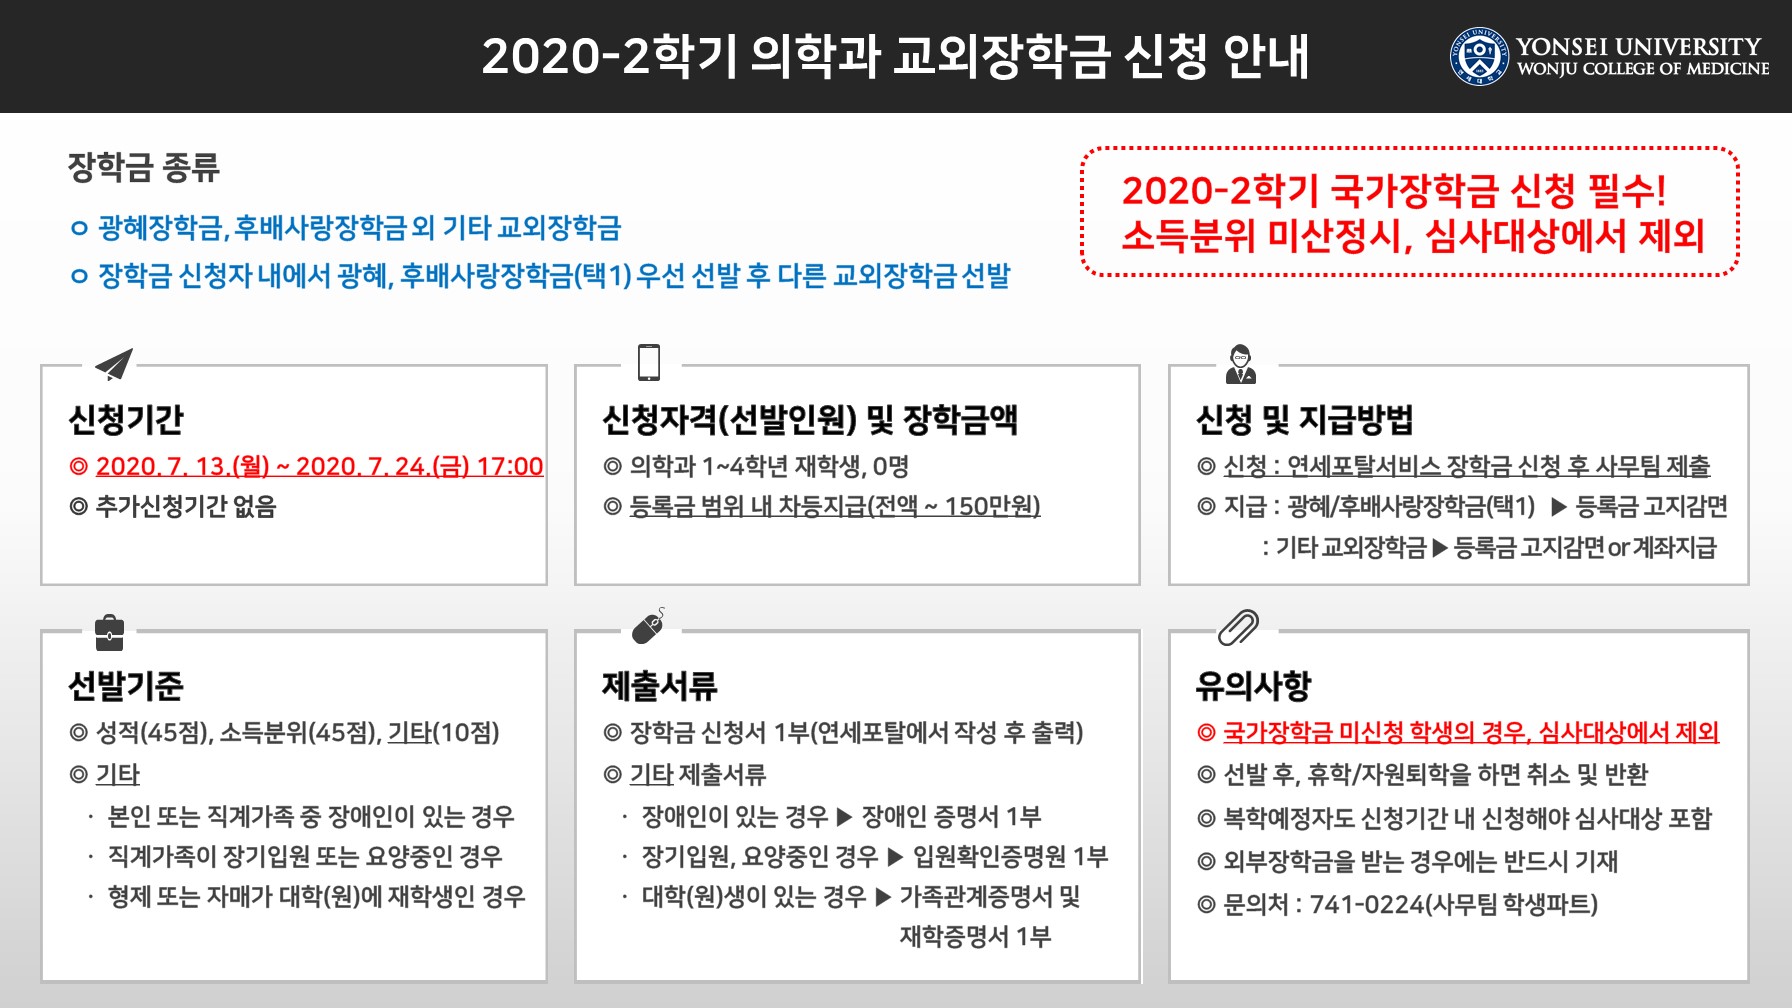 2020-2 홈페이지 공지용.jpg